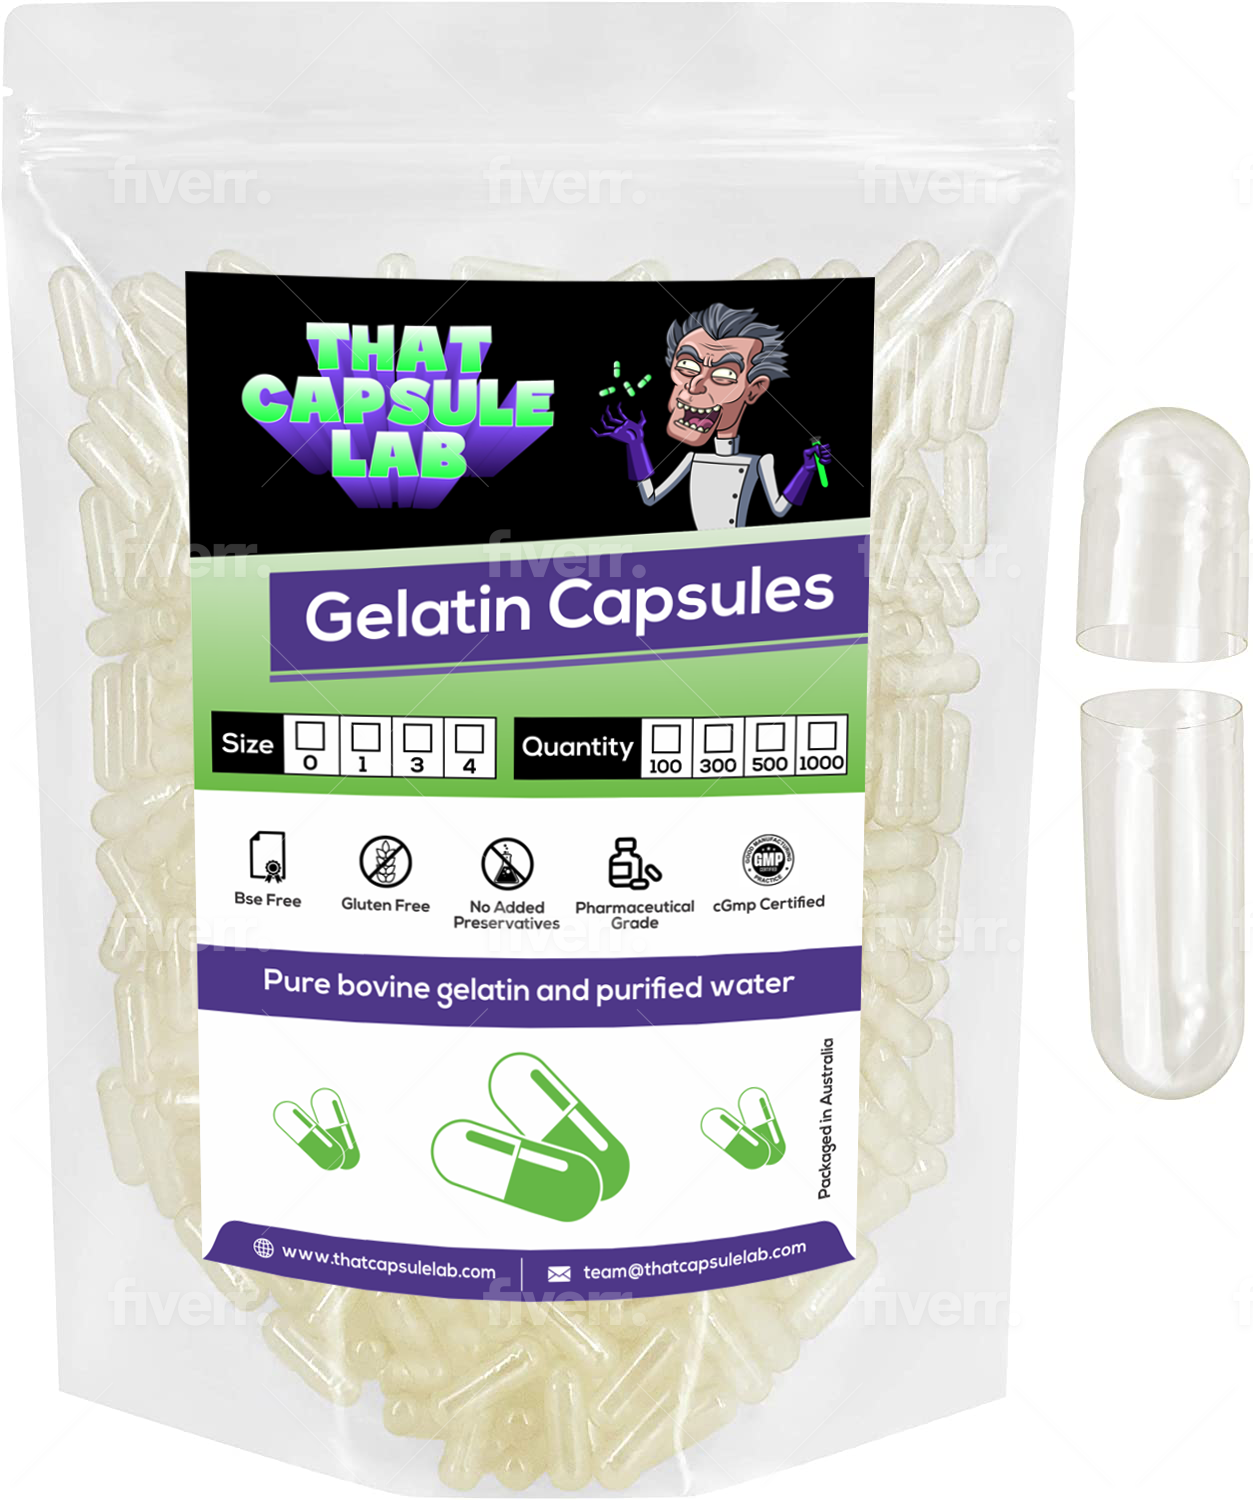 Empty Gelatin Capsules size 3